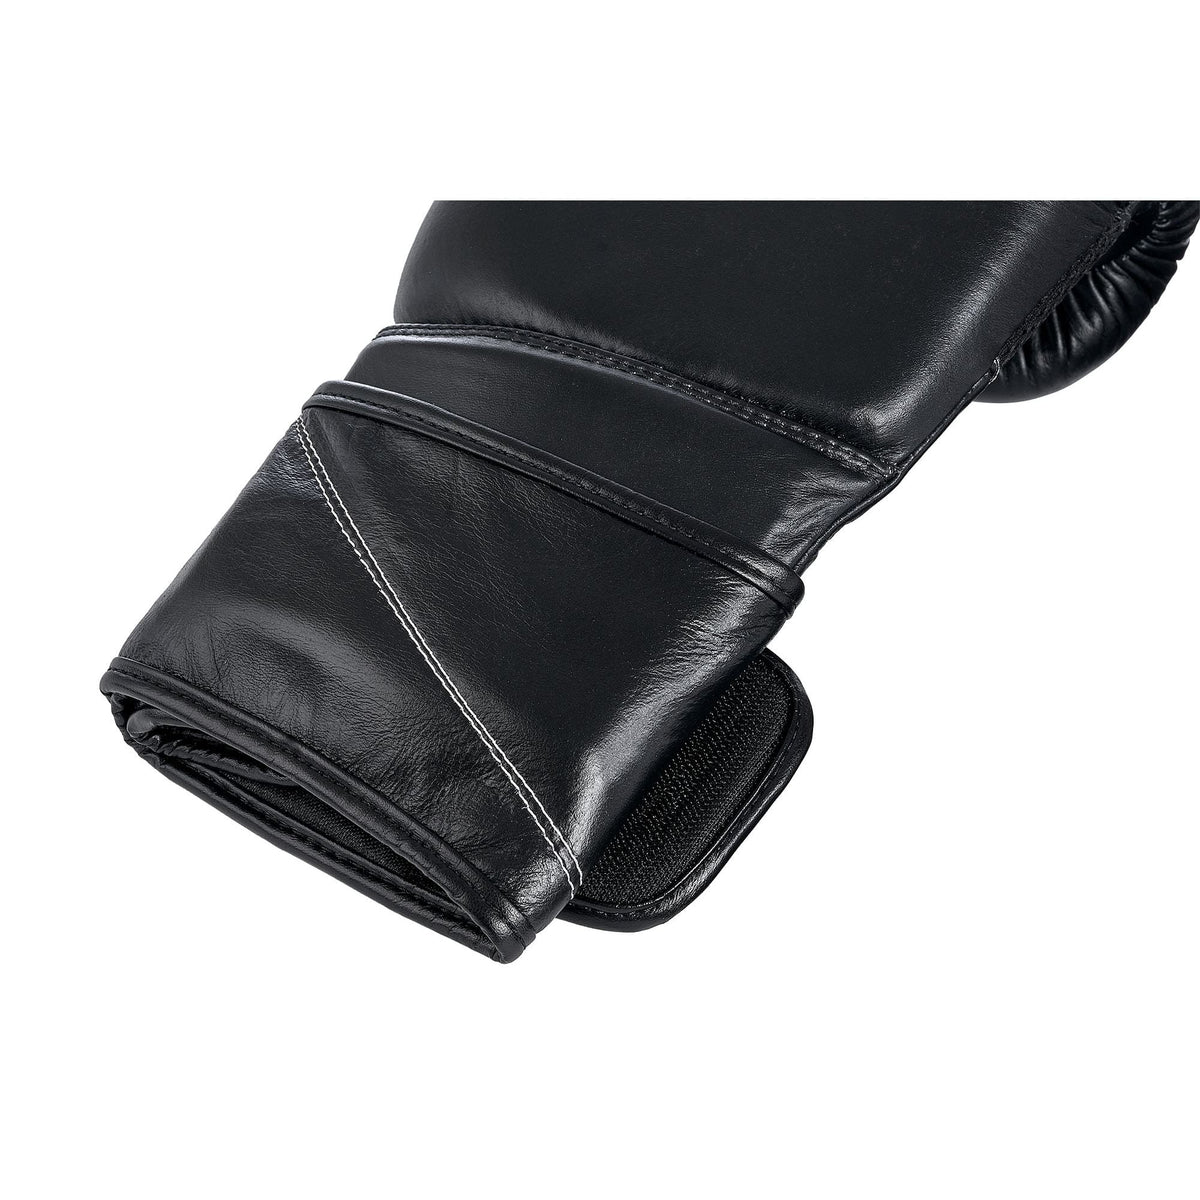 Außenperspektive des Klettverschlusses der schwarzen Boxhandschuhe aus Leder